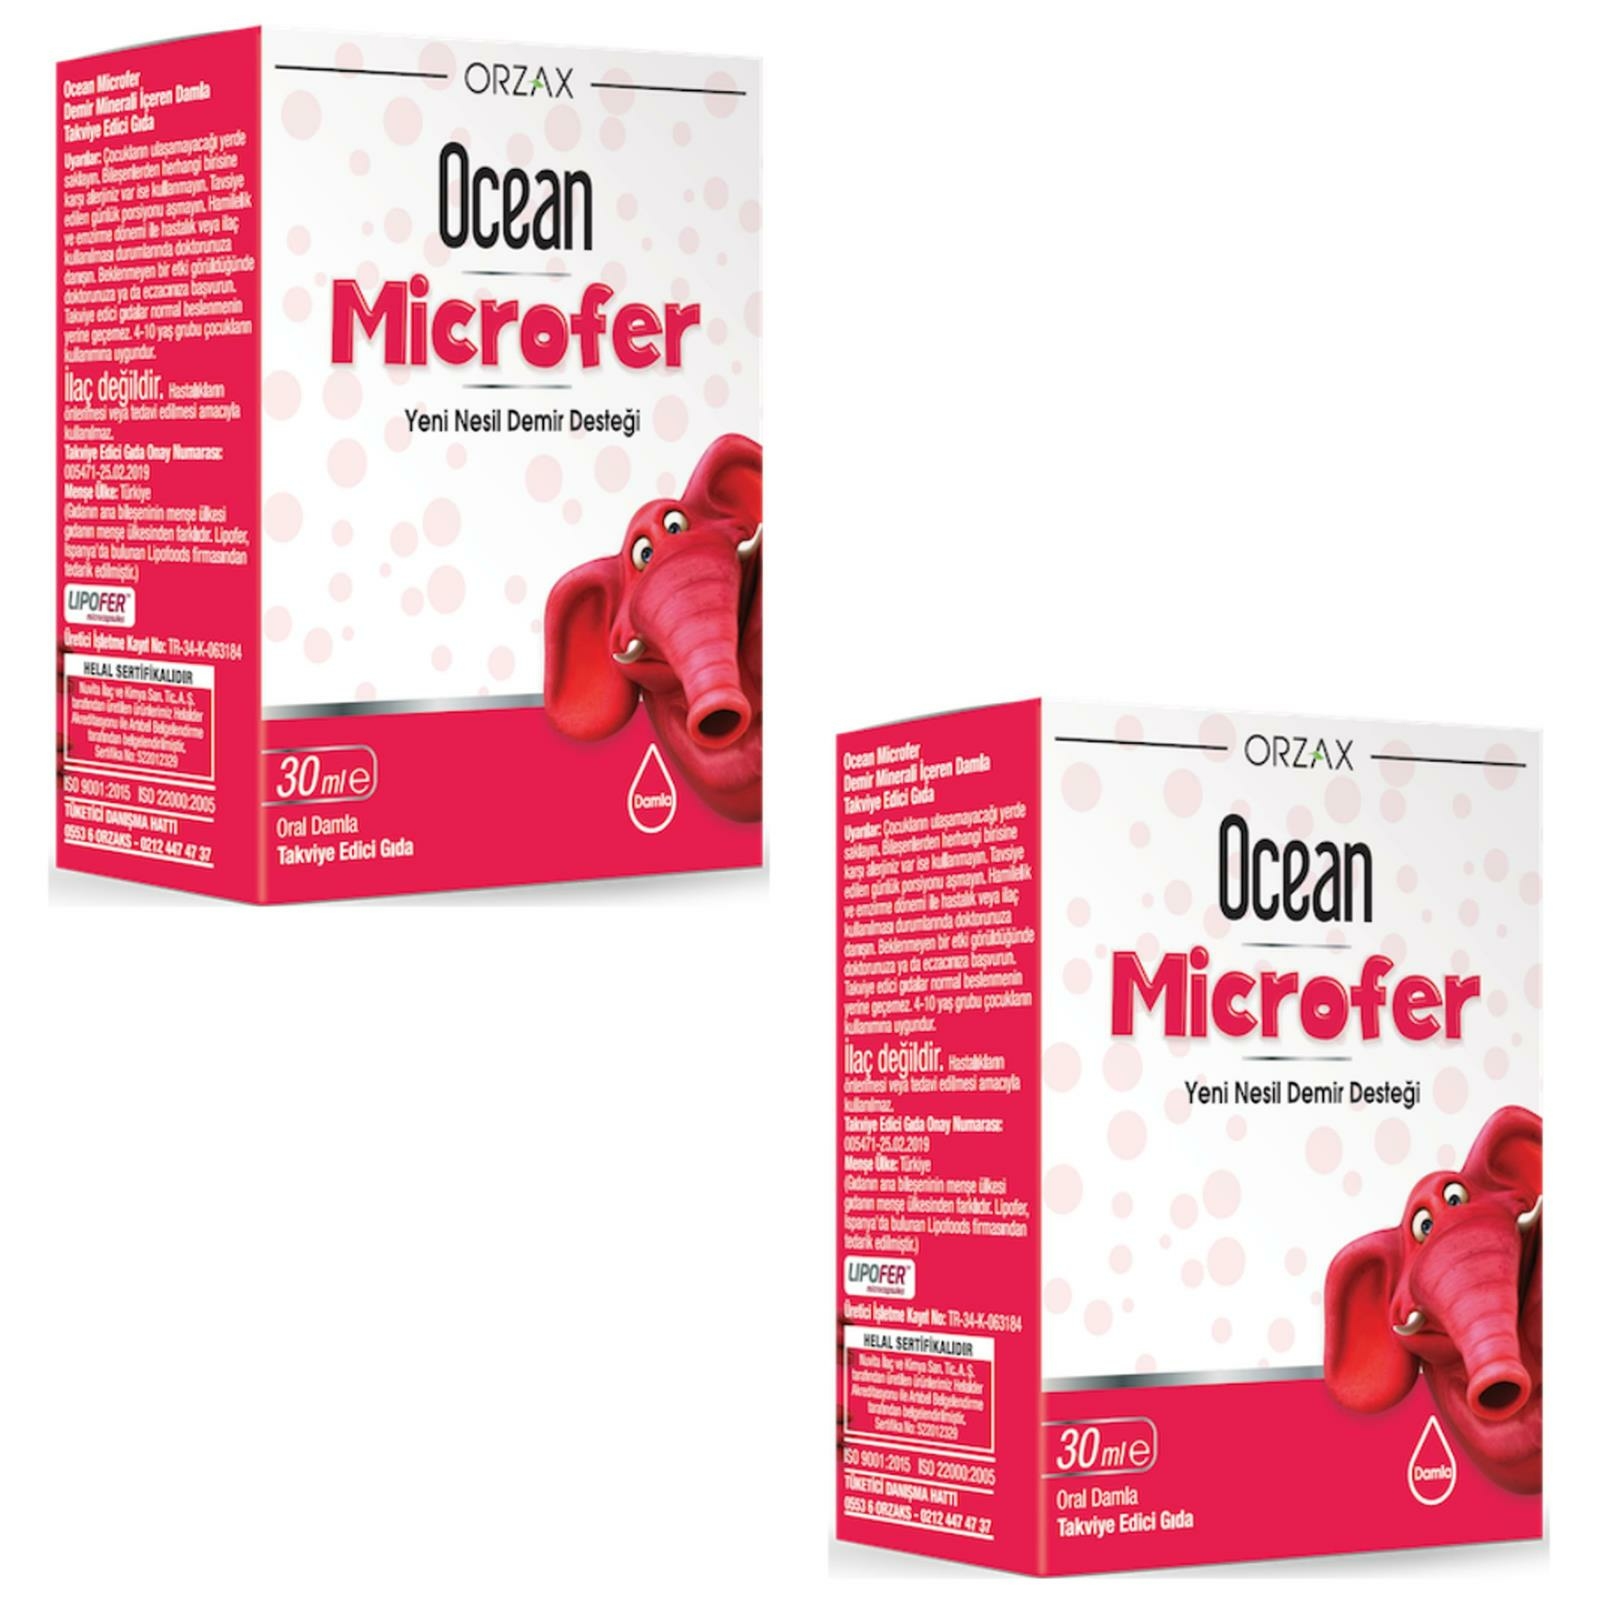 Ocean Microfer Damla 30 ml 2 ADET